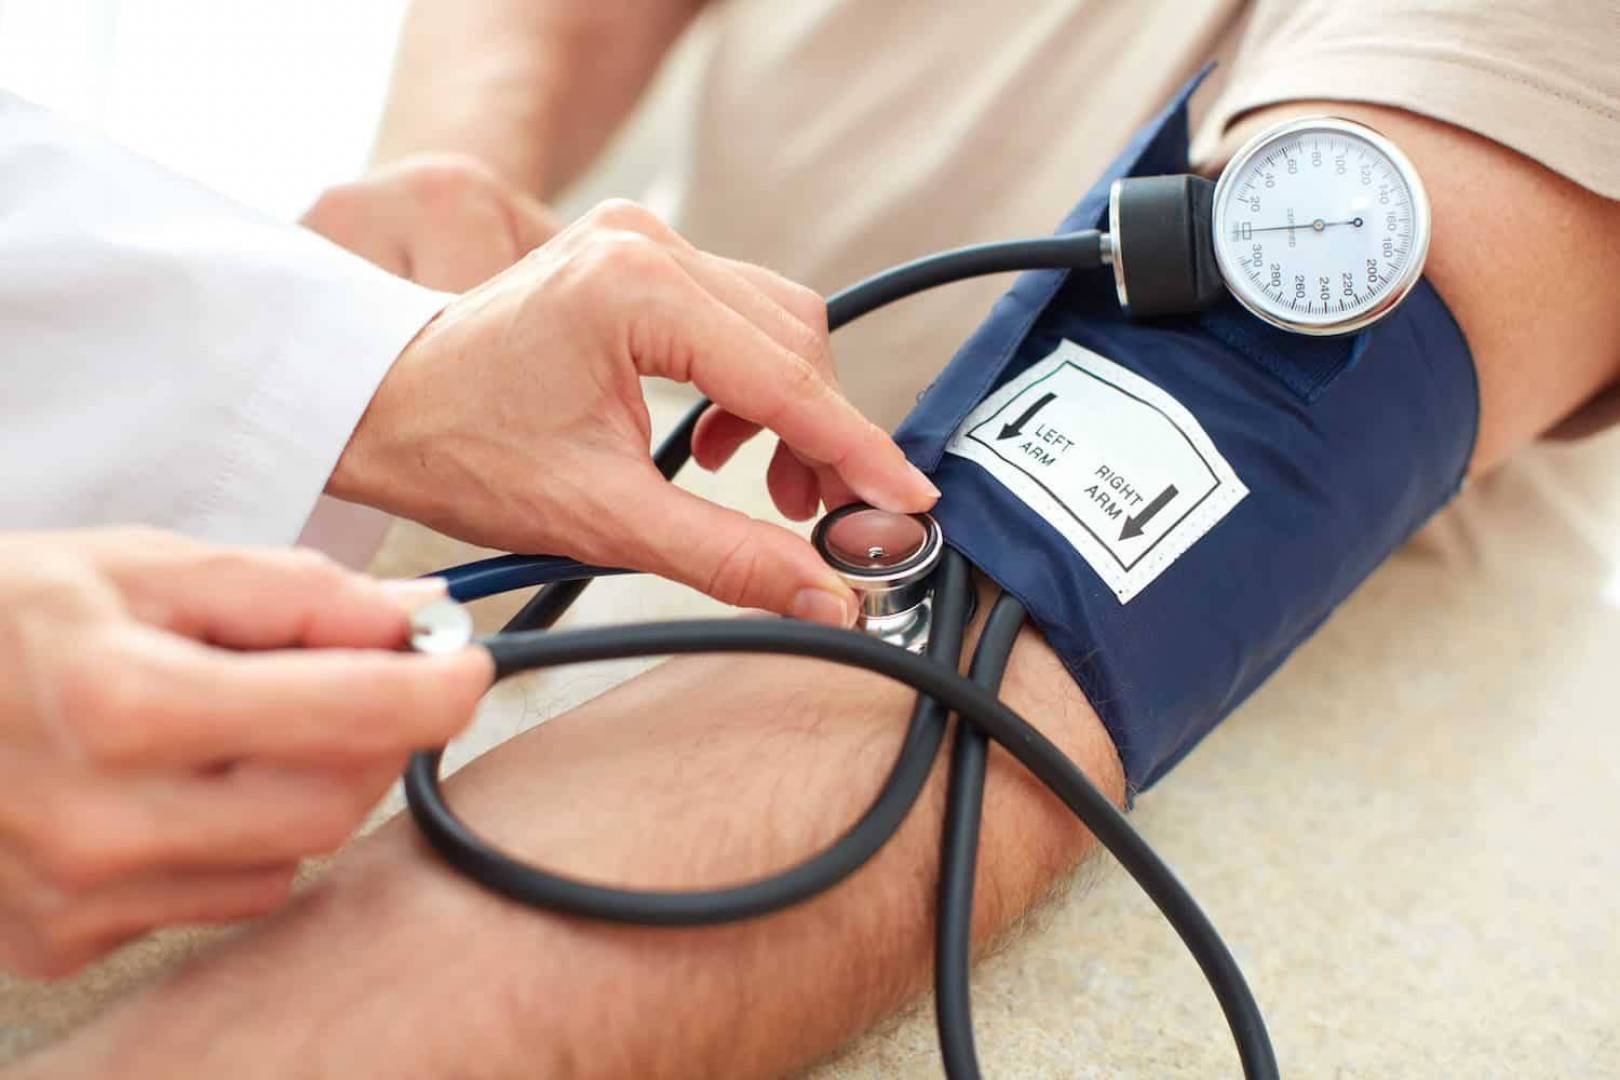 ما علاقة أدوية ارتفاع ضغط الدم بانخفاض وفيات كورونا؟ P_1627nir2x1